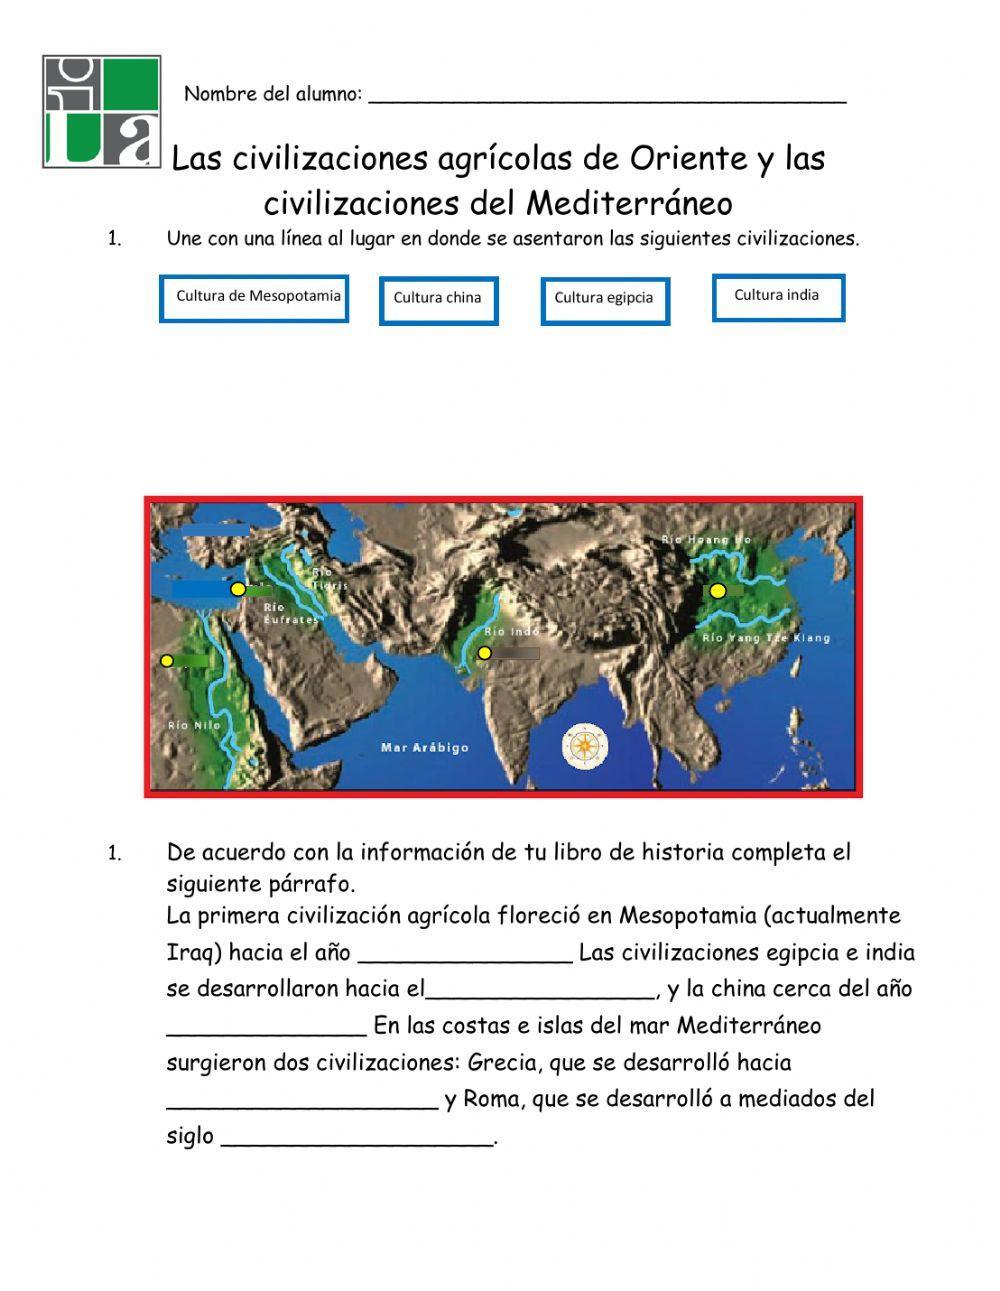 Las civilizaciones agrícolas de Oriente y las civilizaciones del Mediterraneo